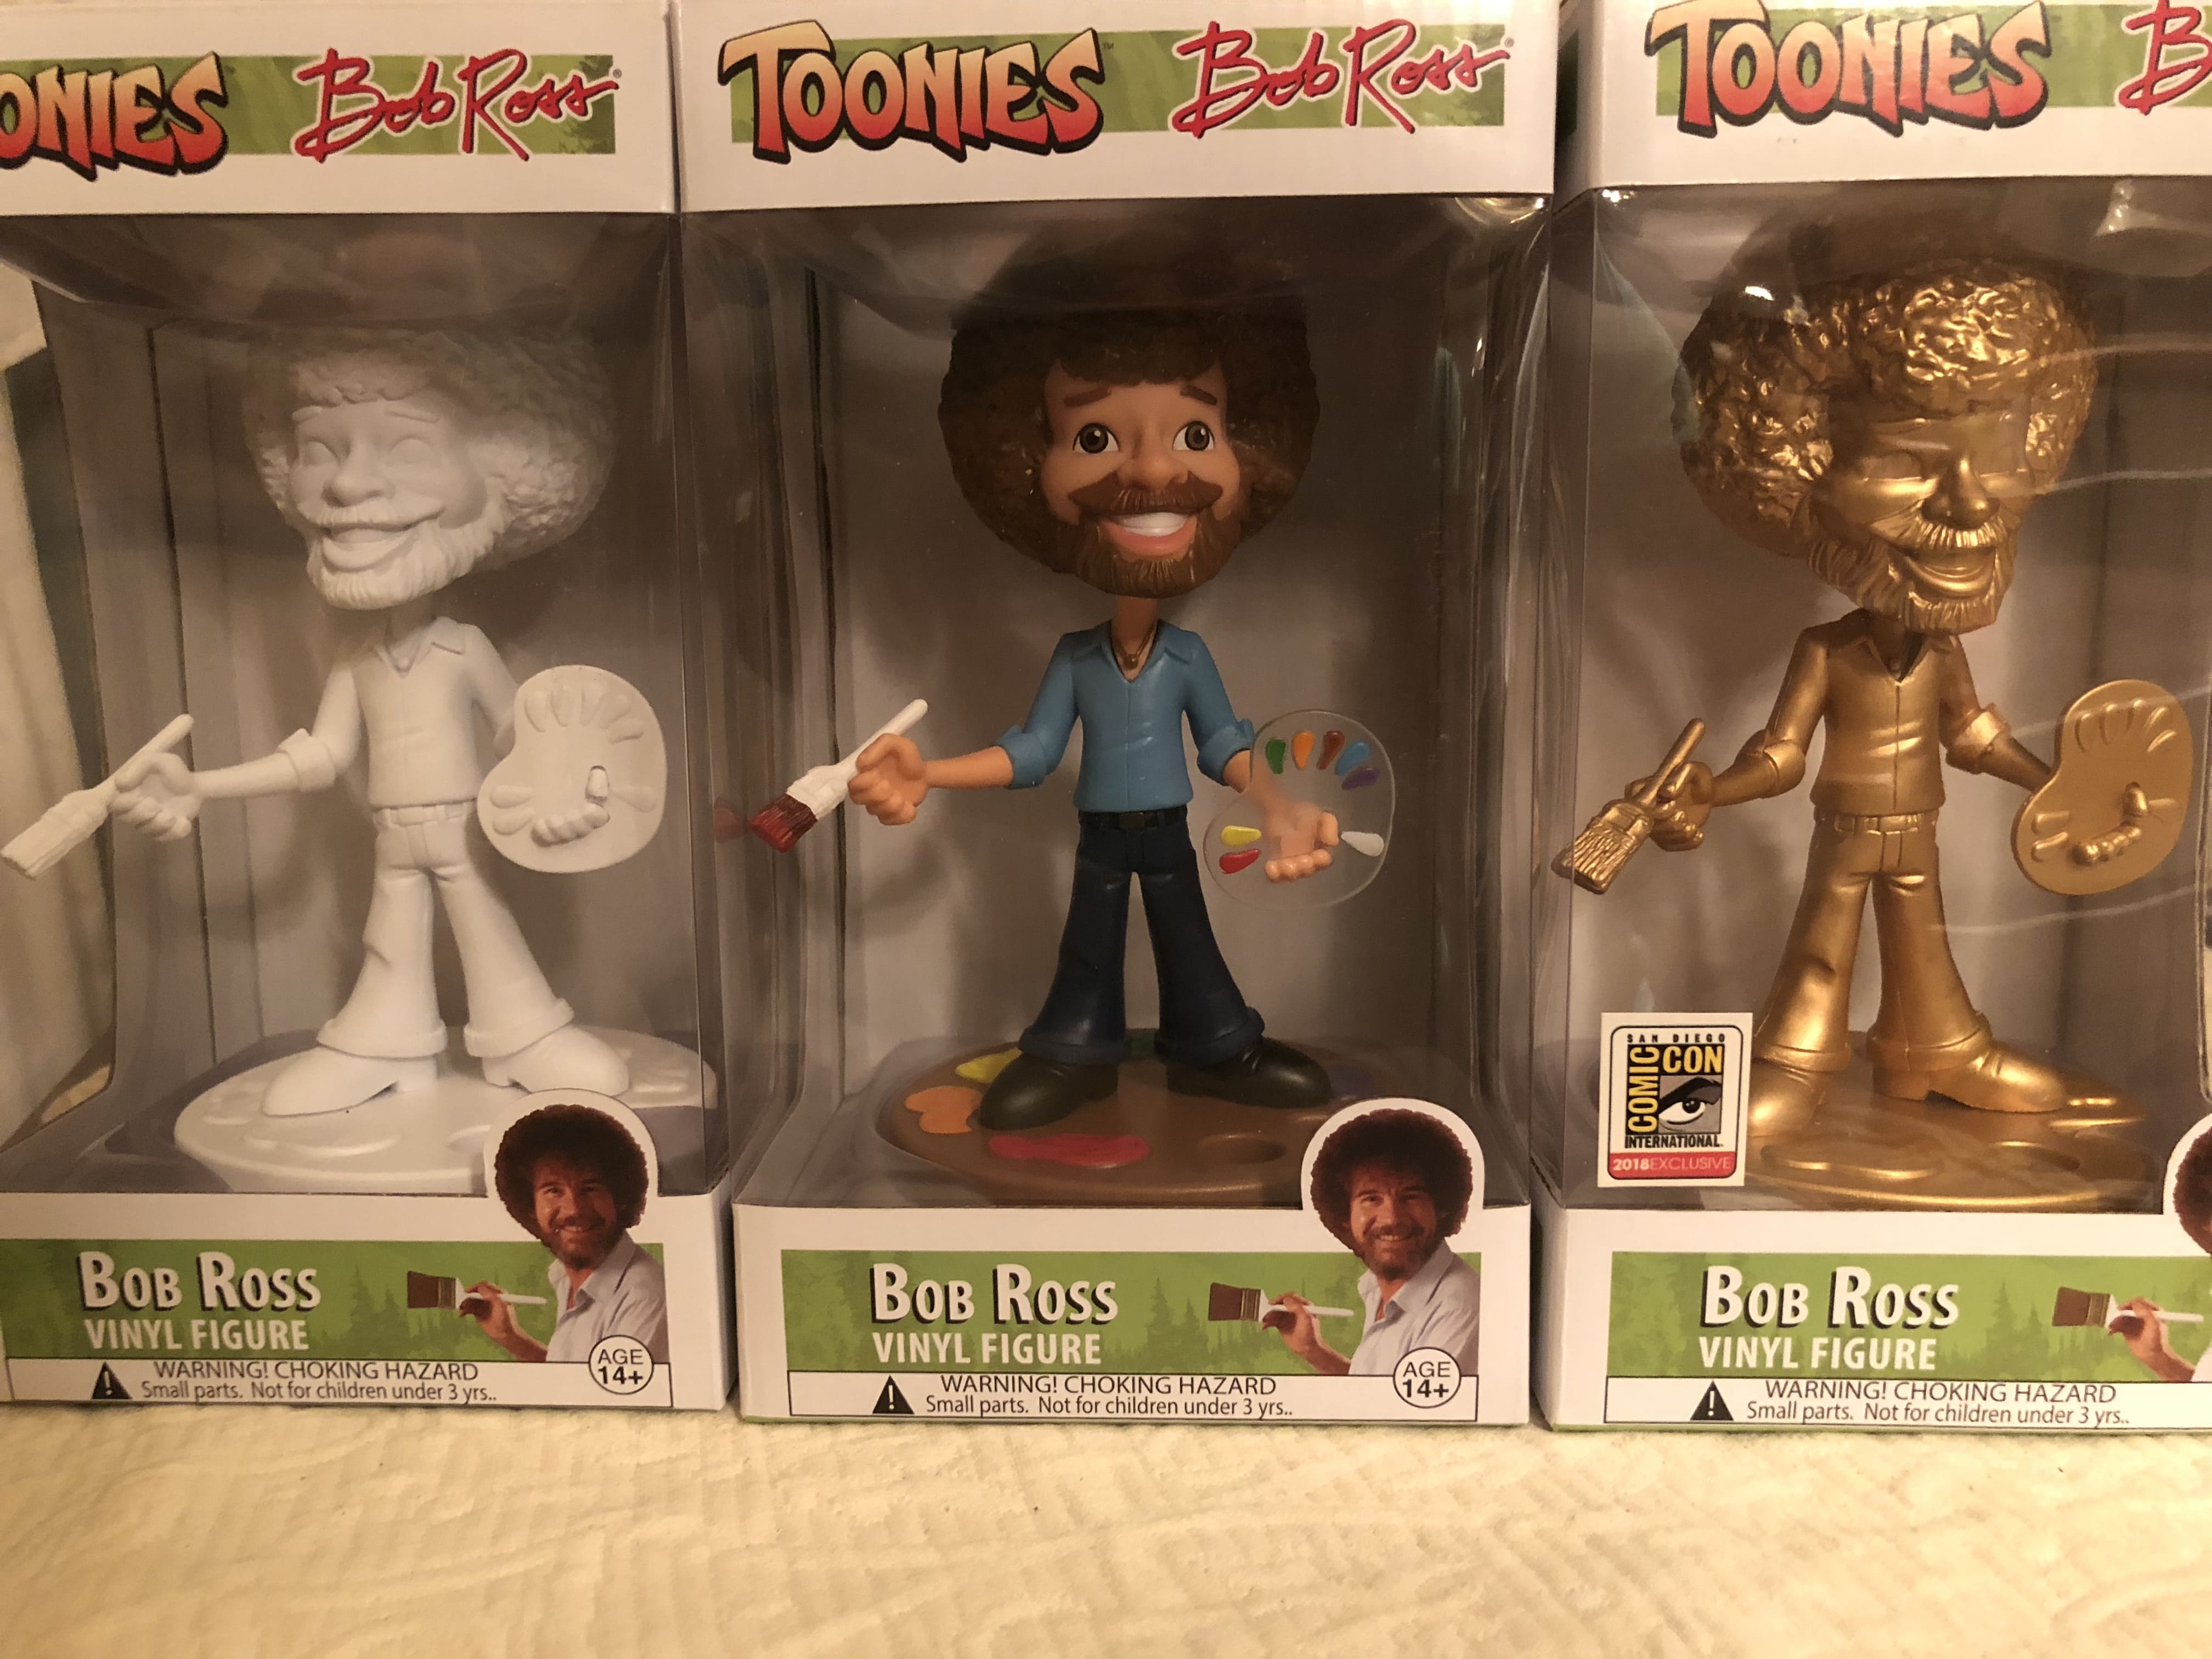 Toynk's exclusive Toonies Bob Ross vinyl figures review